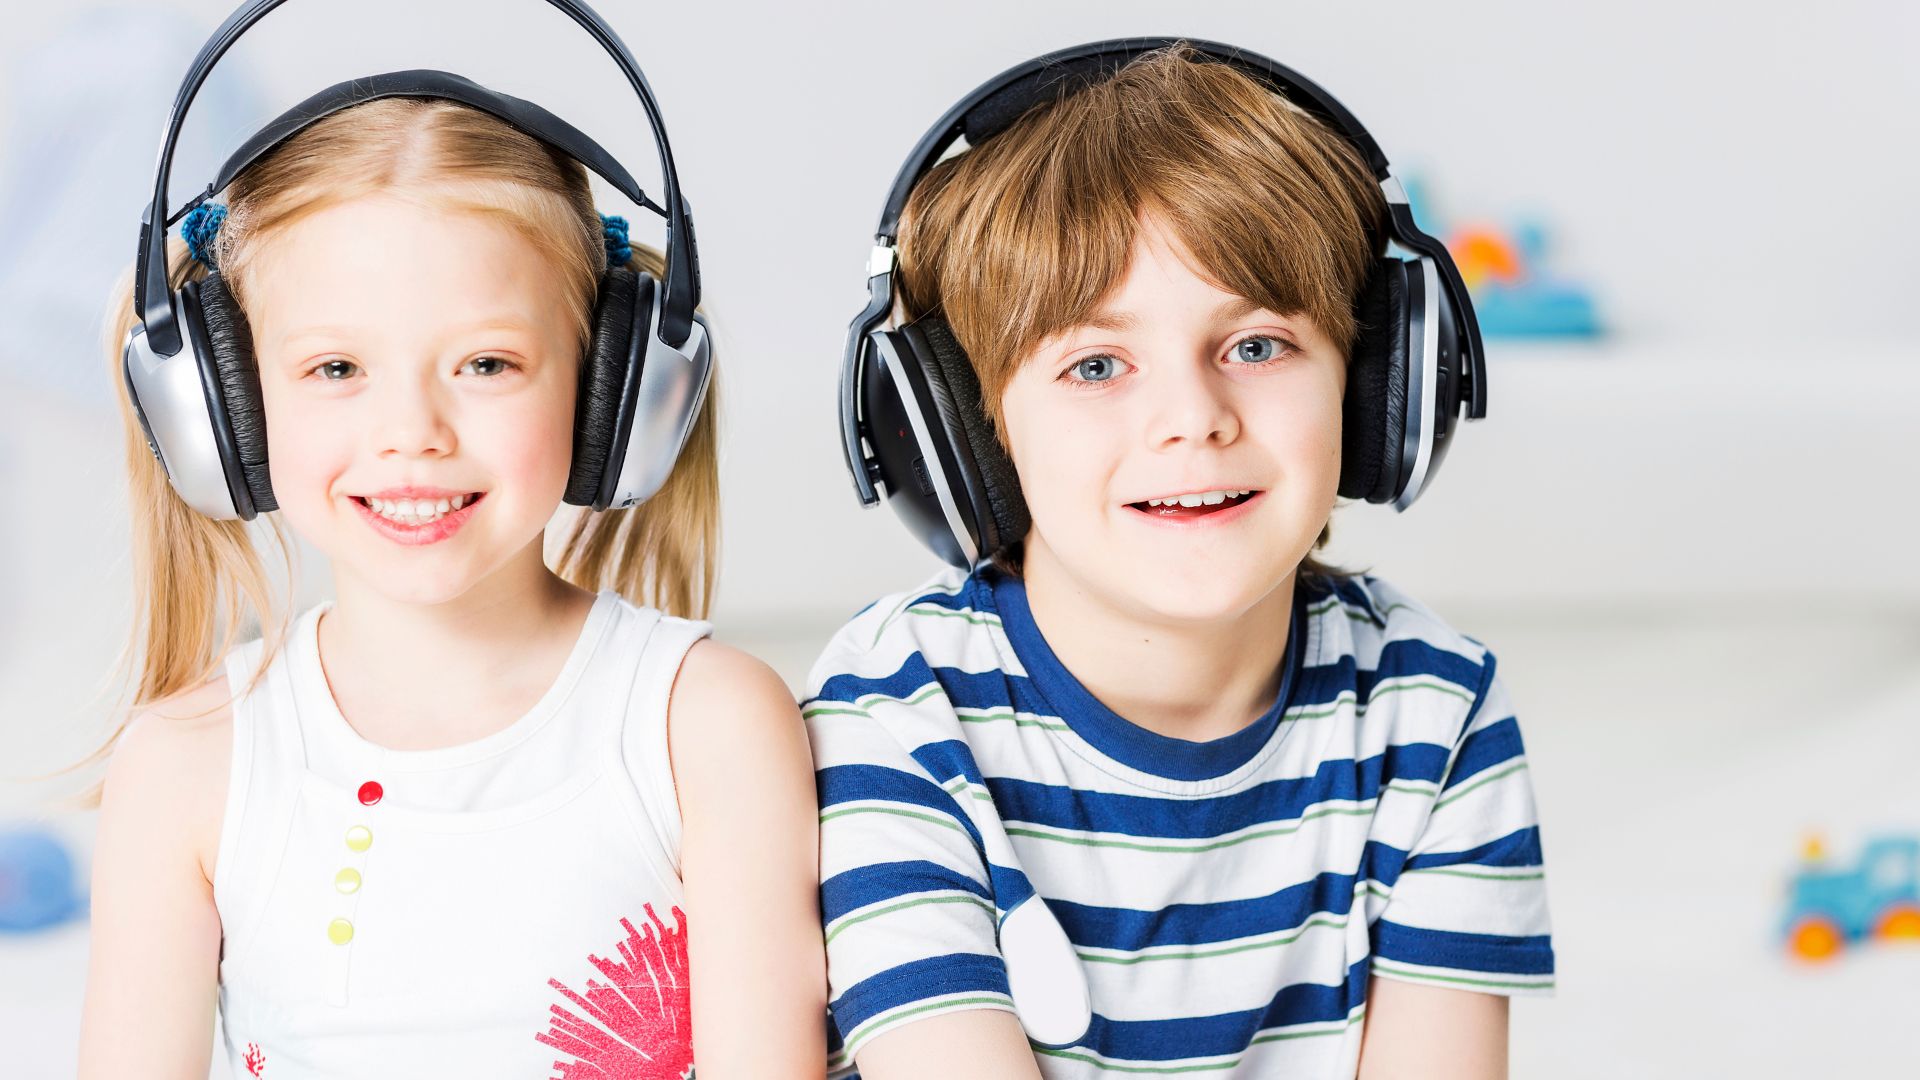 Chłopiec i dziewczyna mają założone nauszne słuchawki dla dzieci.